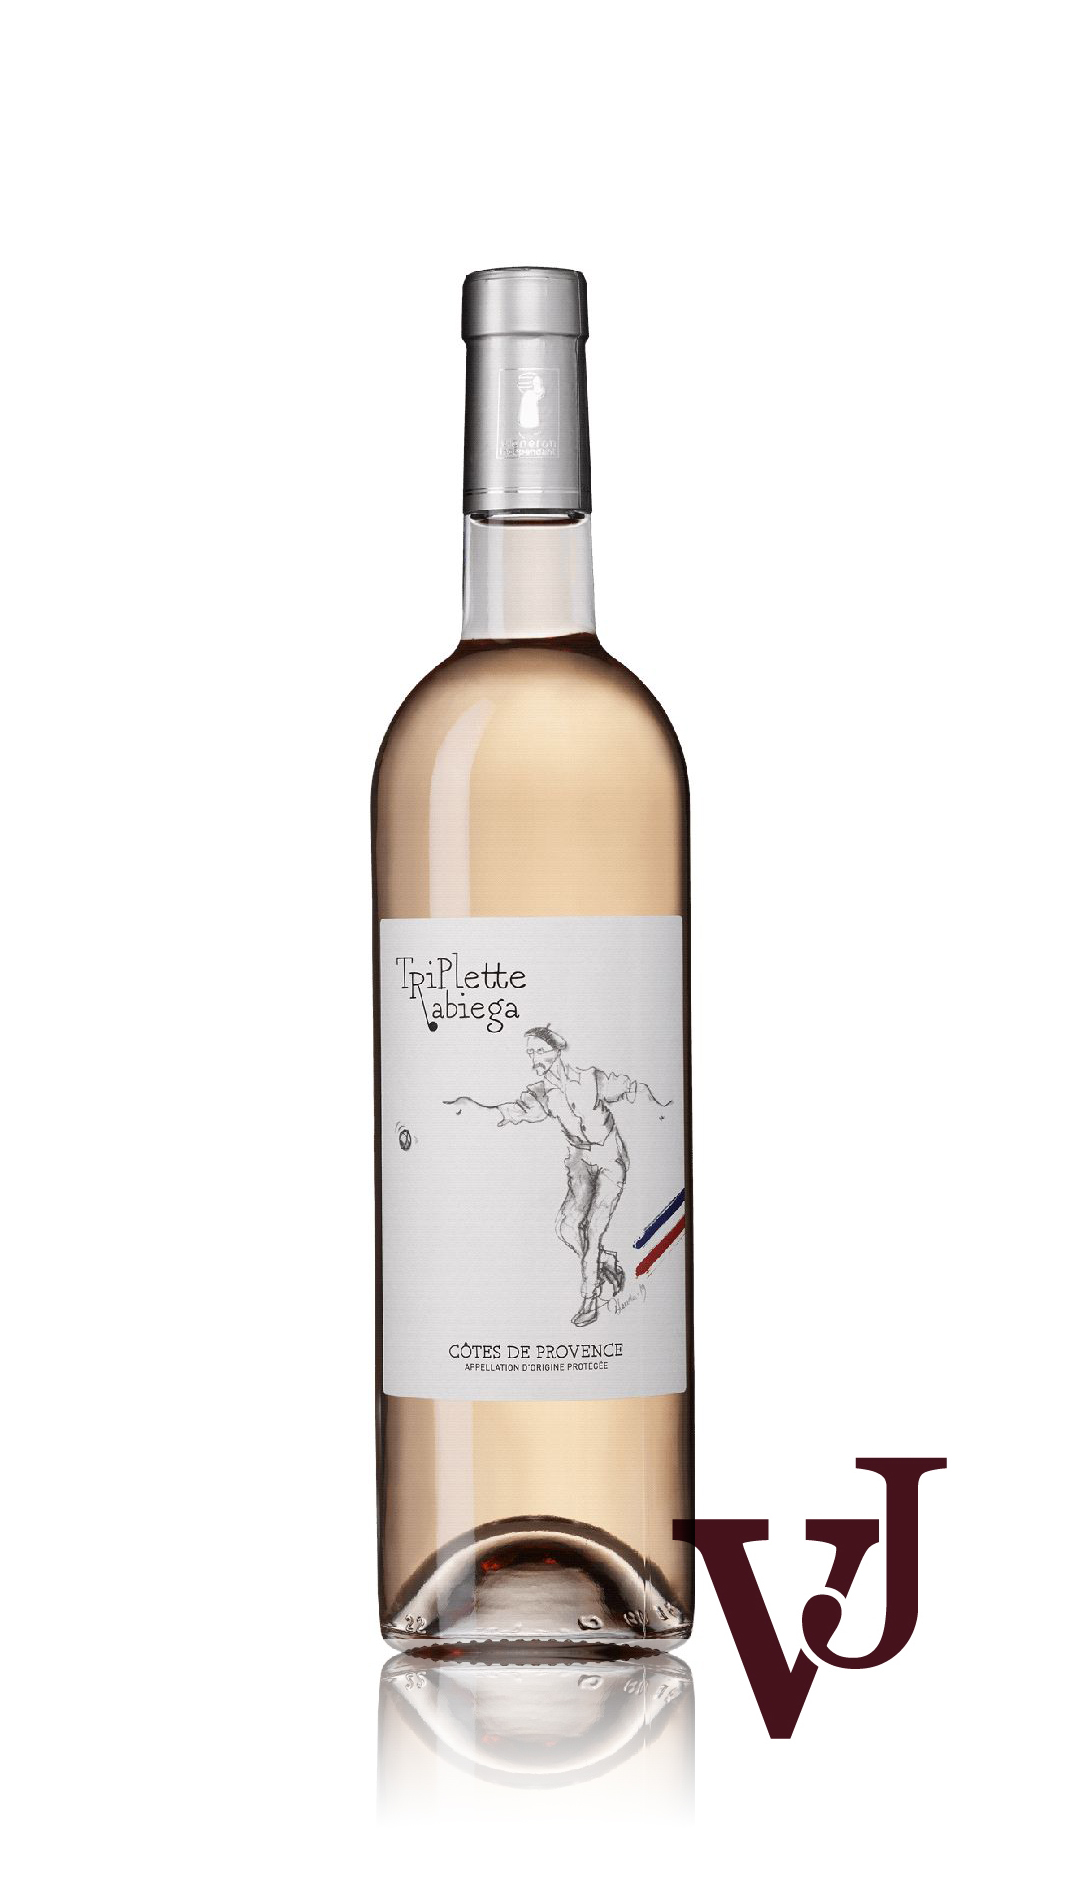 Rosé Vin - Rabiega artikel nummer 5659701 från producenten Domaine Rabiega från området Frankrike